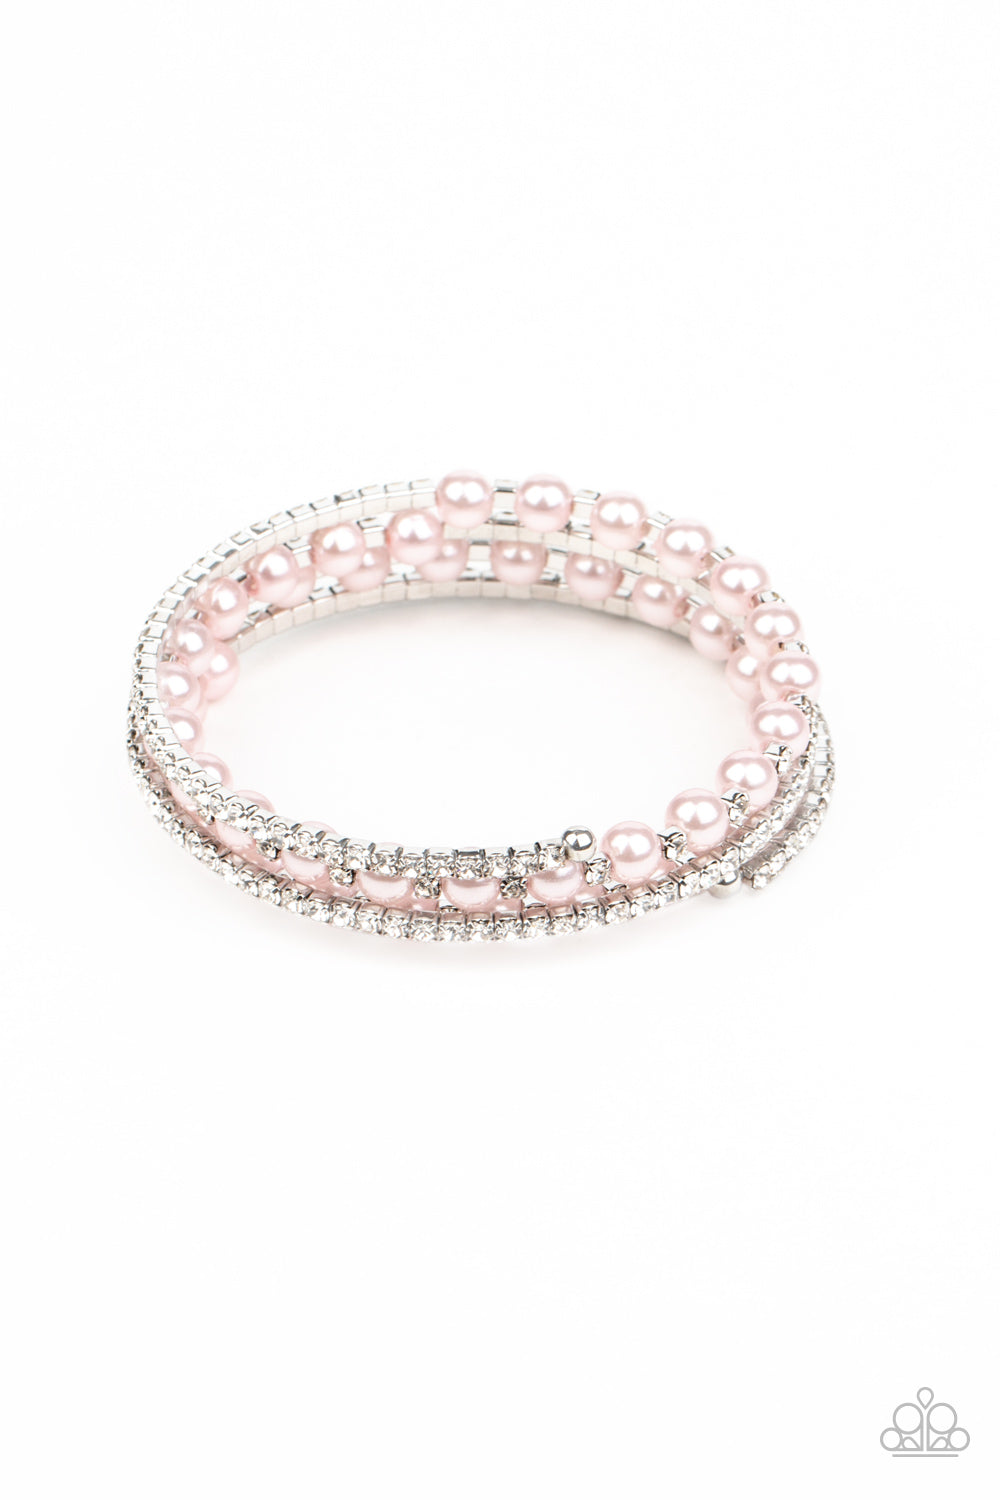 Starry Strut Pink Bracelet